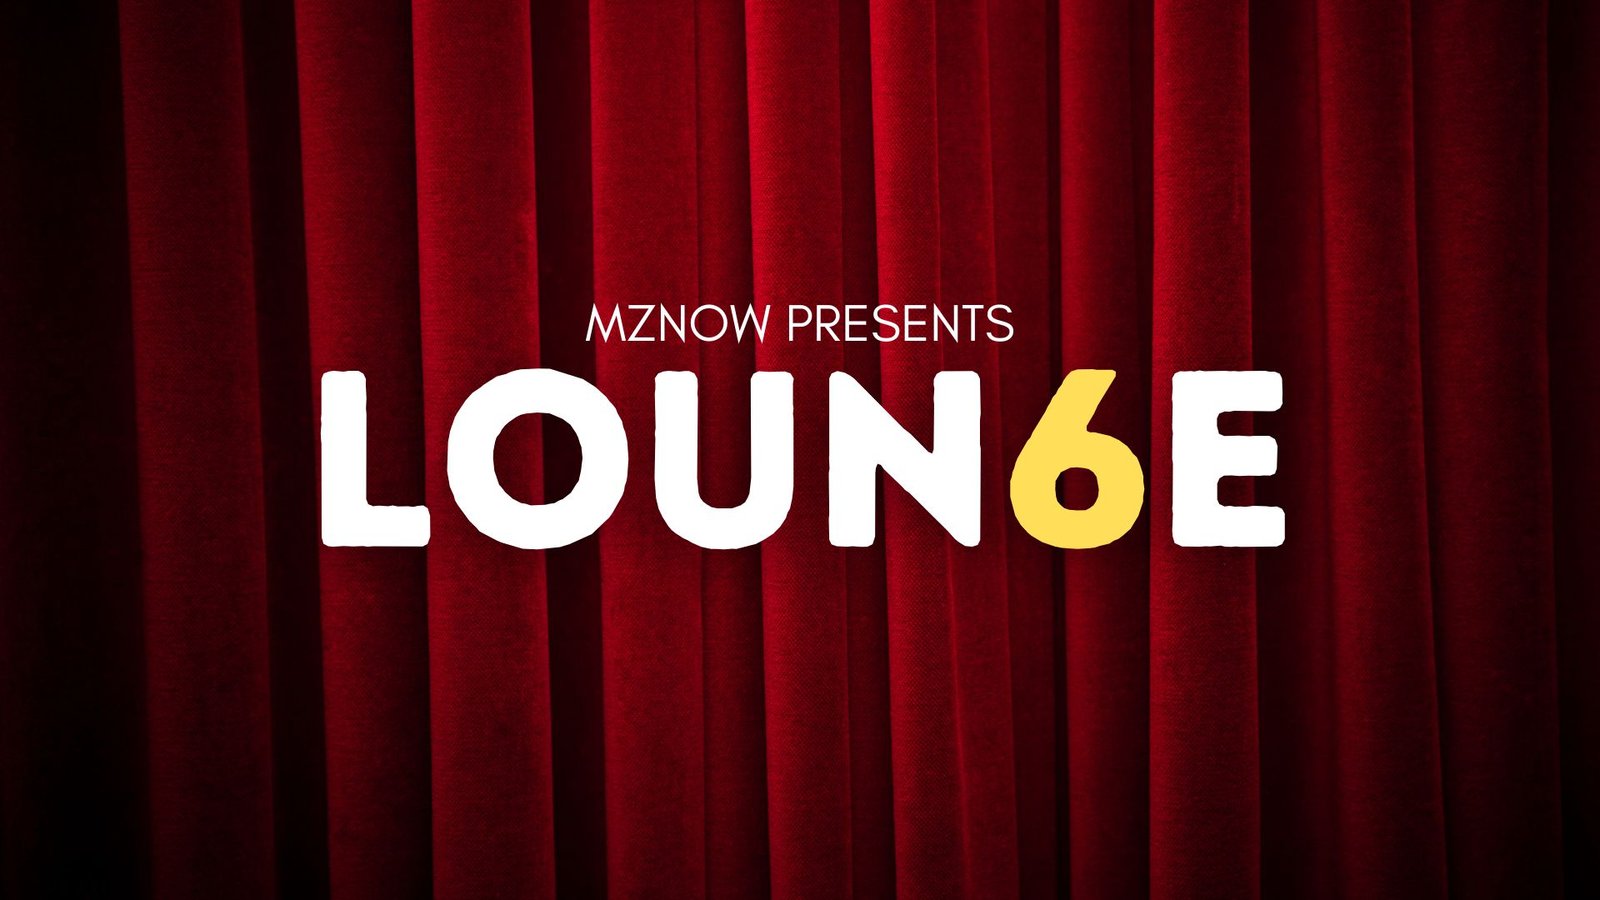 Lounge 6 Logo, Loun6e